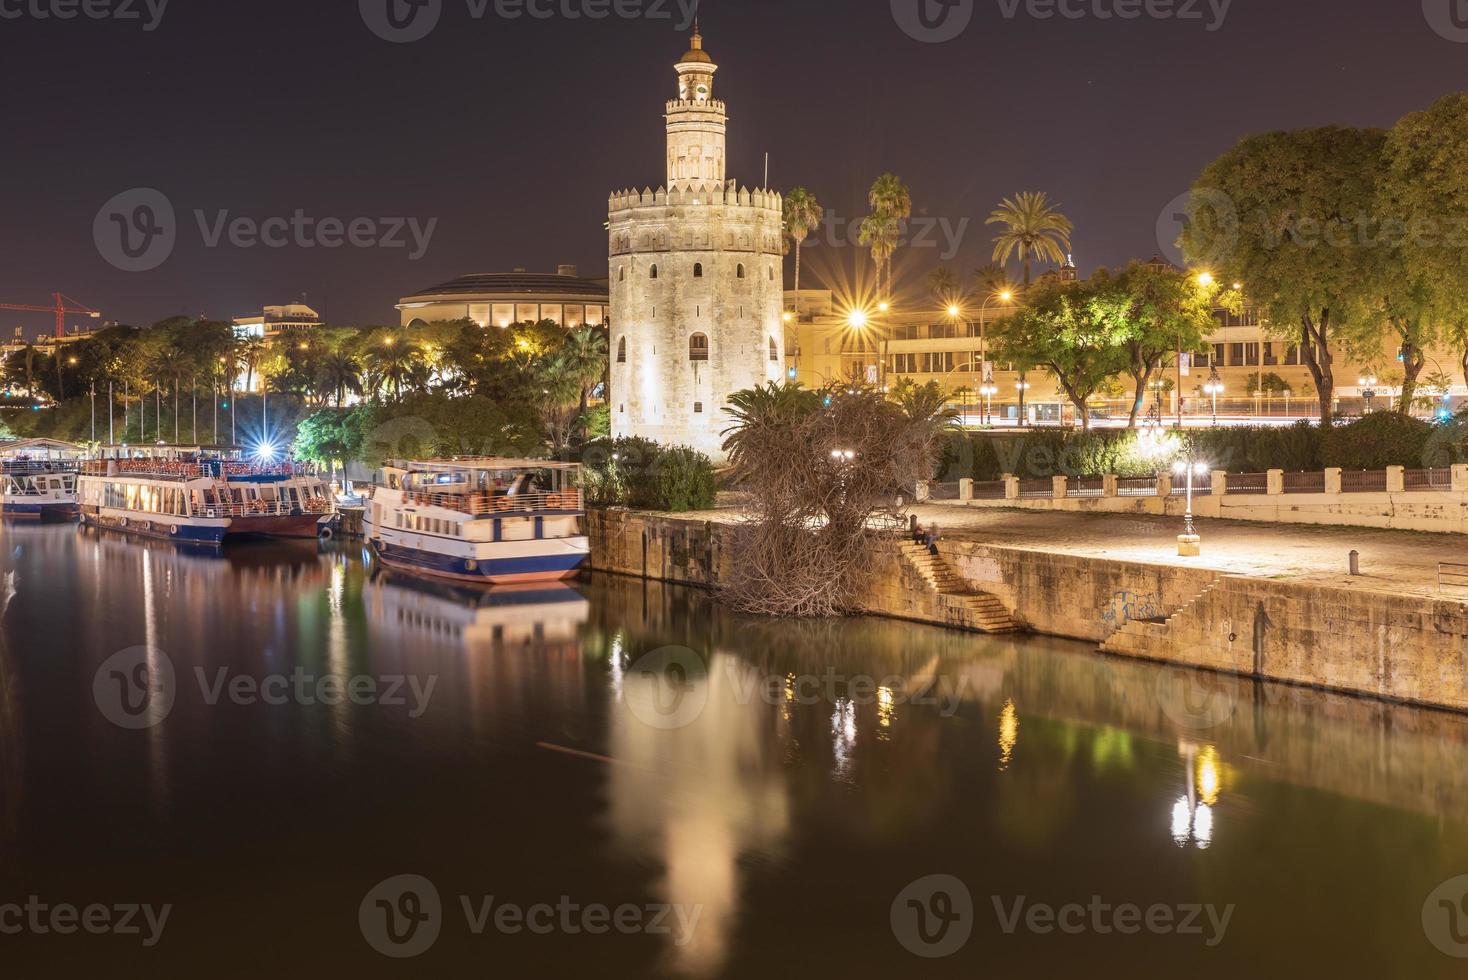 de torre del oro toren van goud is een twaalfhoekig leger uitkijktoren in Sevilla zuidelijk Spanje het was opgericht in bestellen naar controle toegang naar stad via de guadalquivir rivier. foto